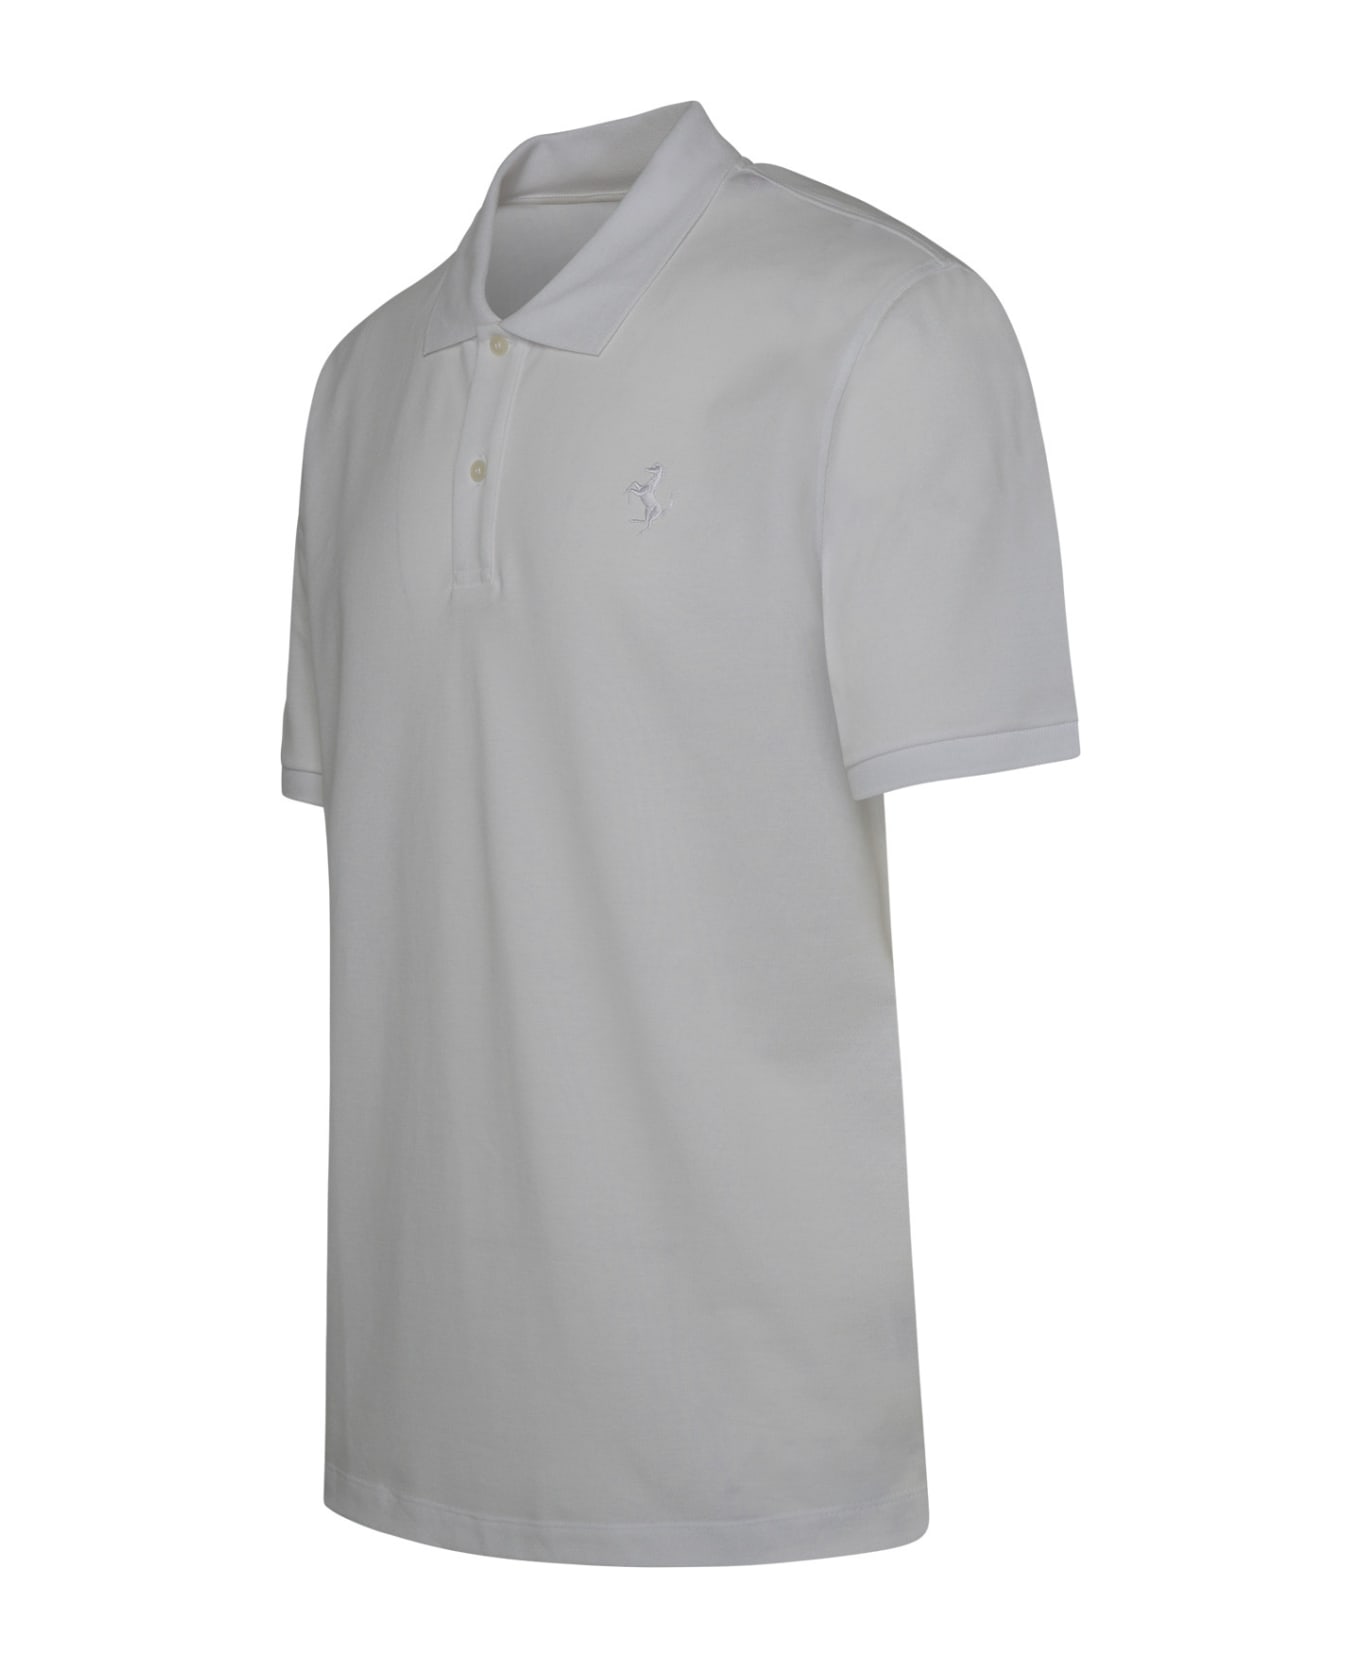 Ferrari White Cotton Blend Polo Shirt - WHITE ポロシャツ